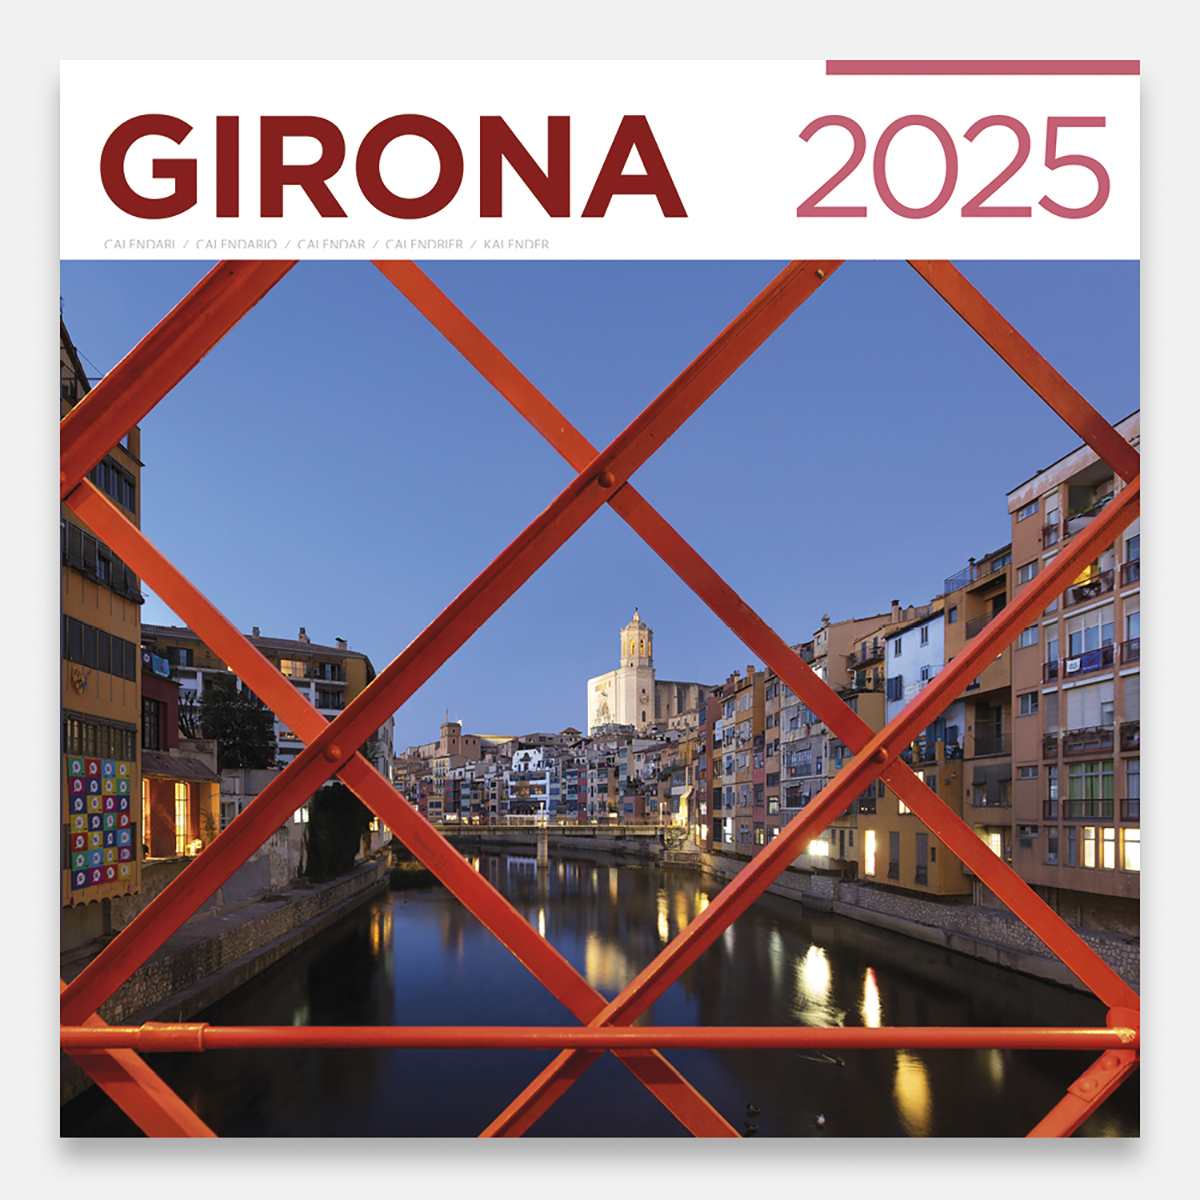 Calendar 2025 Girona 25gig calendario pared 2025 girona